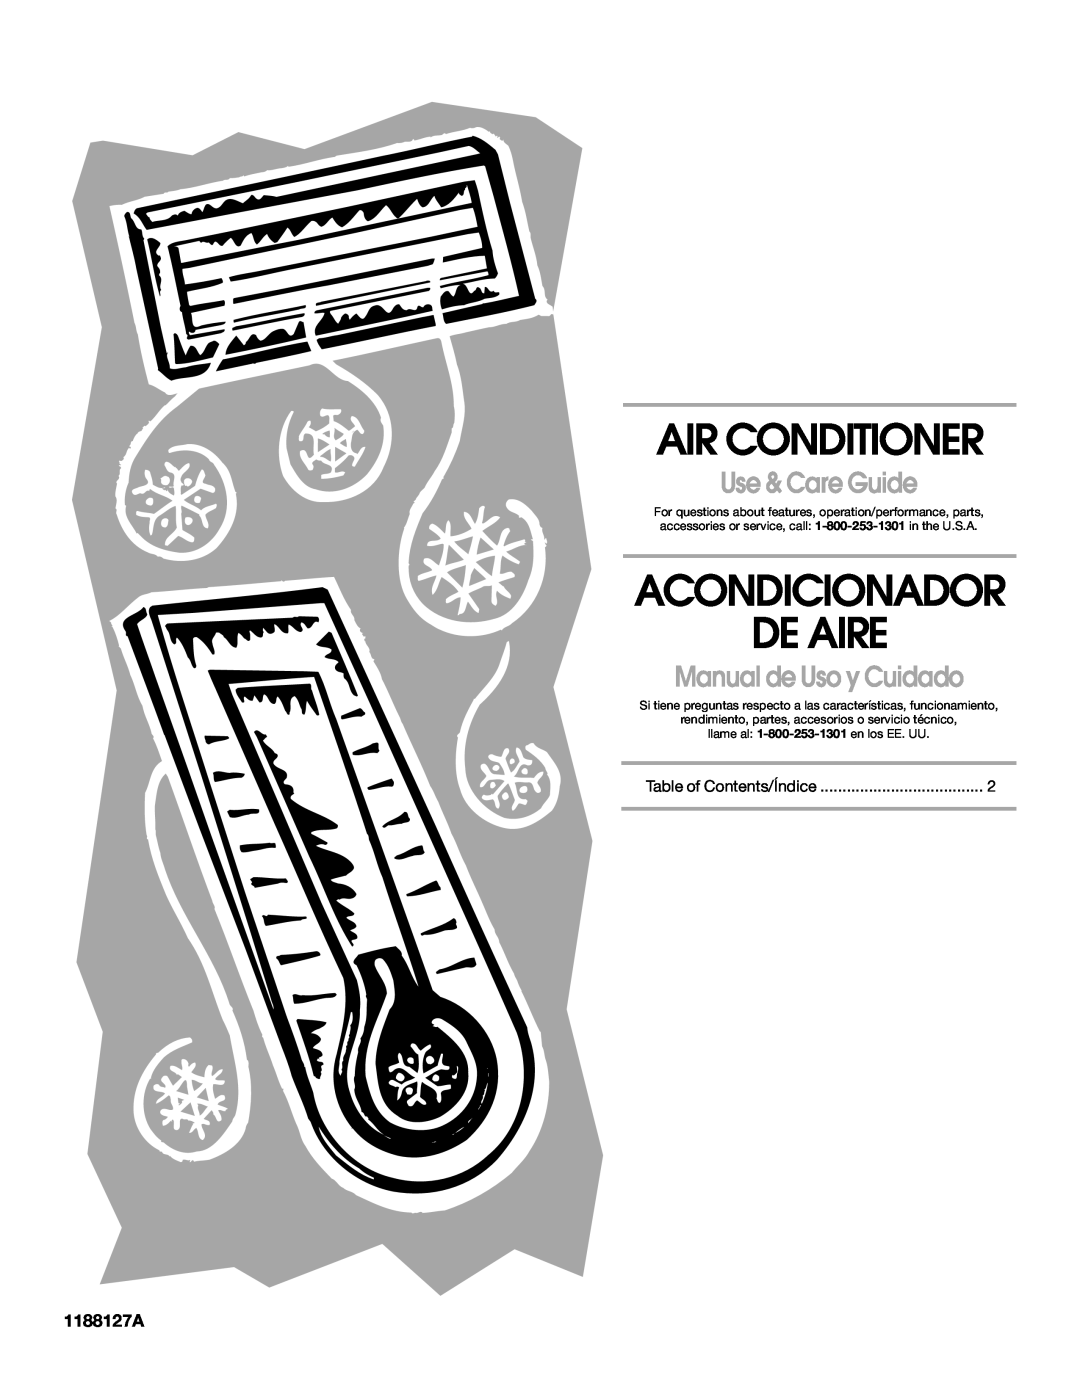 Whirlpool ACE184XR0 manual 1188127A, Air Conditioner, Acondicionador De Aire, Use & Care Guide, Manual de Uso y Cuidado 